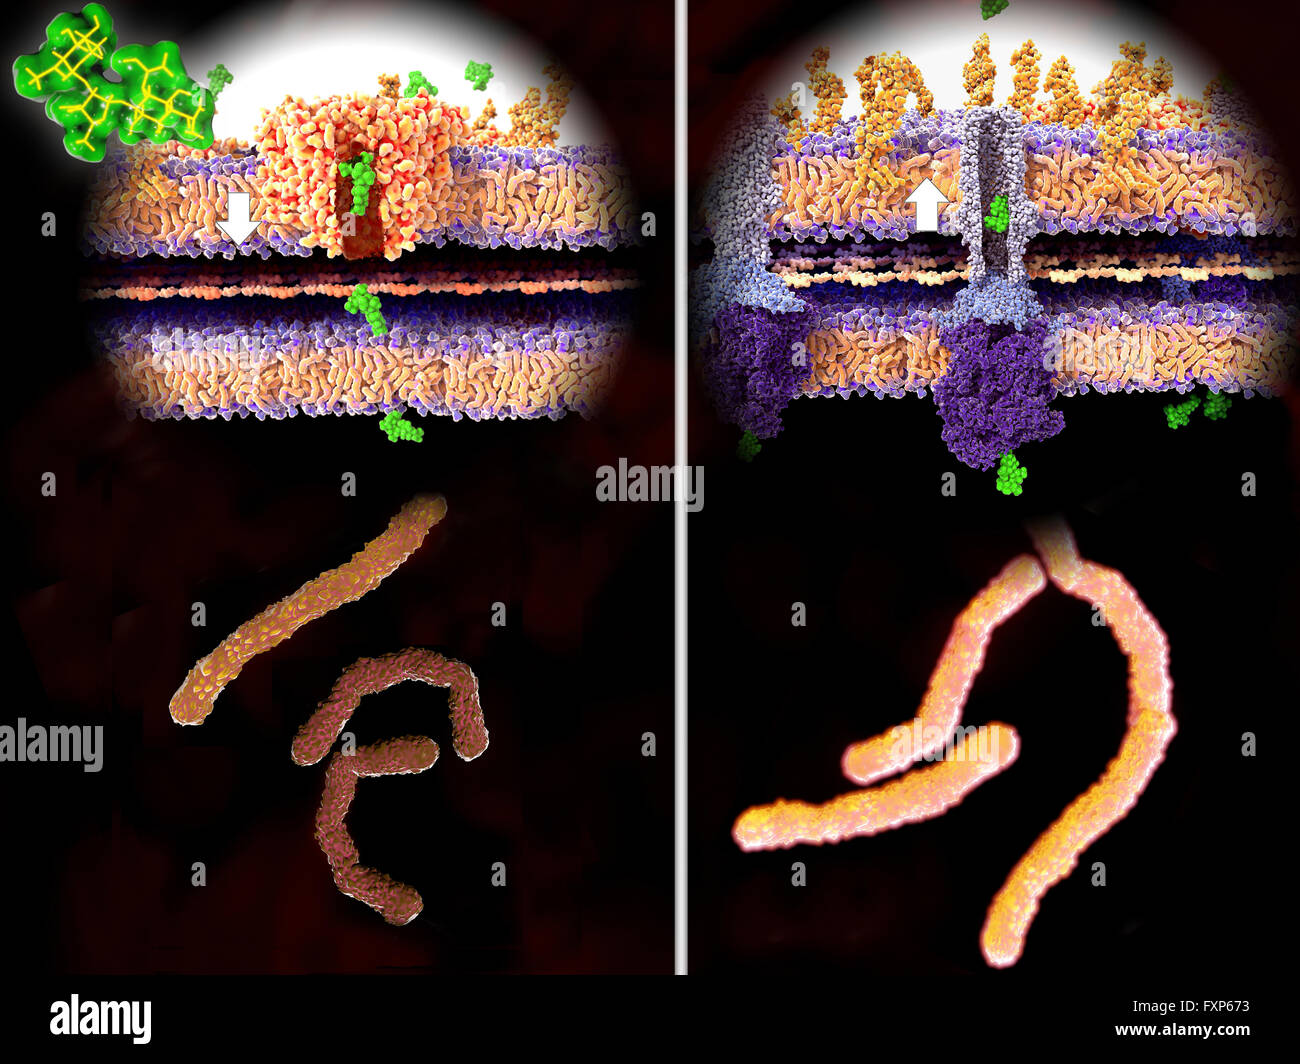 Antibiotika-Resistenz. Illustration der molekulare Mechanismus der Resistenz gegen Antibiotika. Auf der linken Seite durchläuft ein Antibiotikum (Streptomycin, grüne) der Bakterienwand (weißer Pfeil) durch den Kanal Protein porin, führt zum Absterben der Bakterien (unten links). Rechts die Gram-negativen Bakterien Resistenzen entwickelt haben und vertreiben die Streptomycin-Moleküle durch ein Protein-Membranpumpe (weißer Pfeil), in diesem Fall TolC Efflux Pumpen (lila-blau-Struktur). Antibiotika-Resistenz kann im Laufe der Zeit durch den übermäßigen Gebrauch von Antibiotika auftreten. Resistente Mikroben erfordern alternative Stockfoto